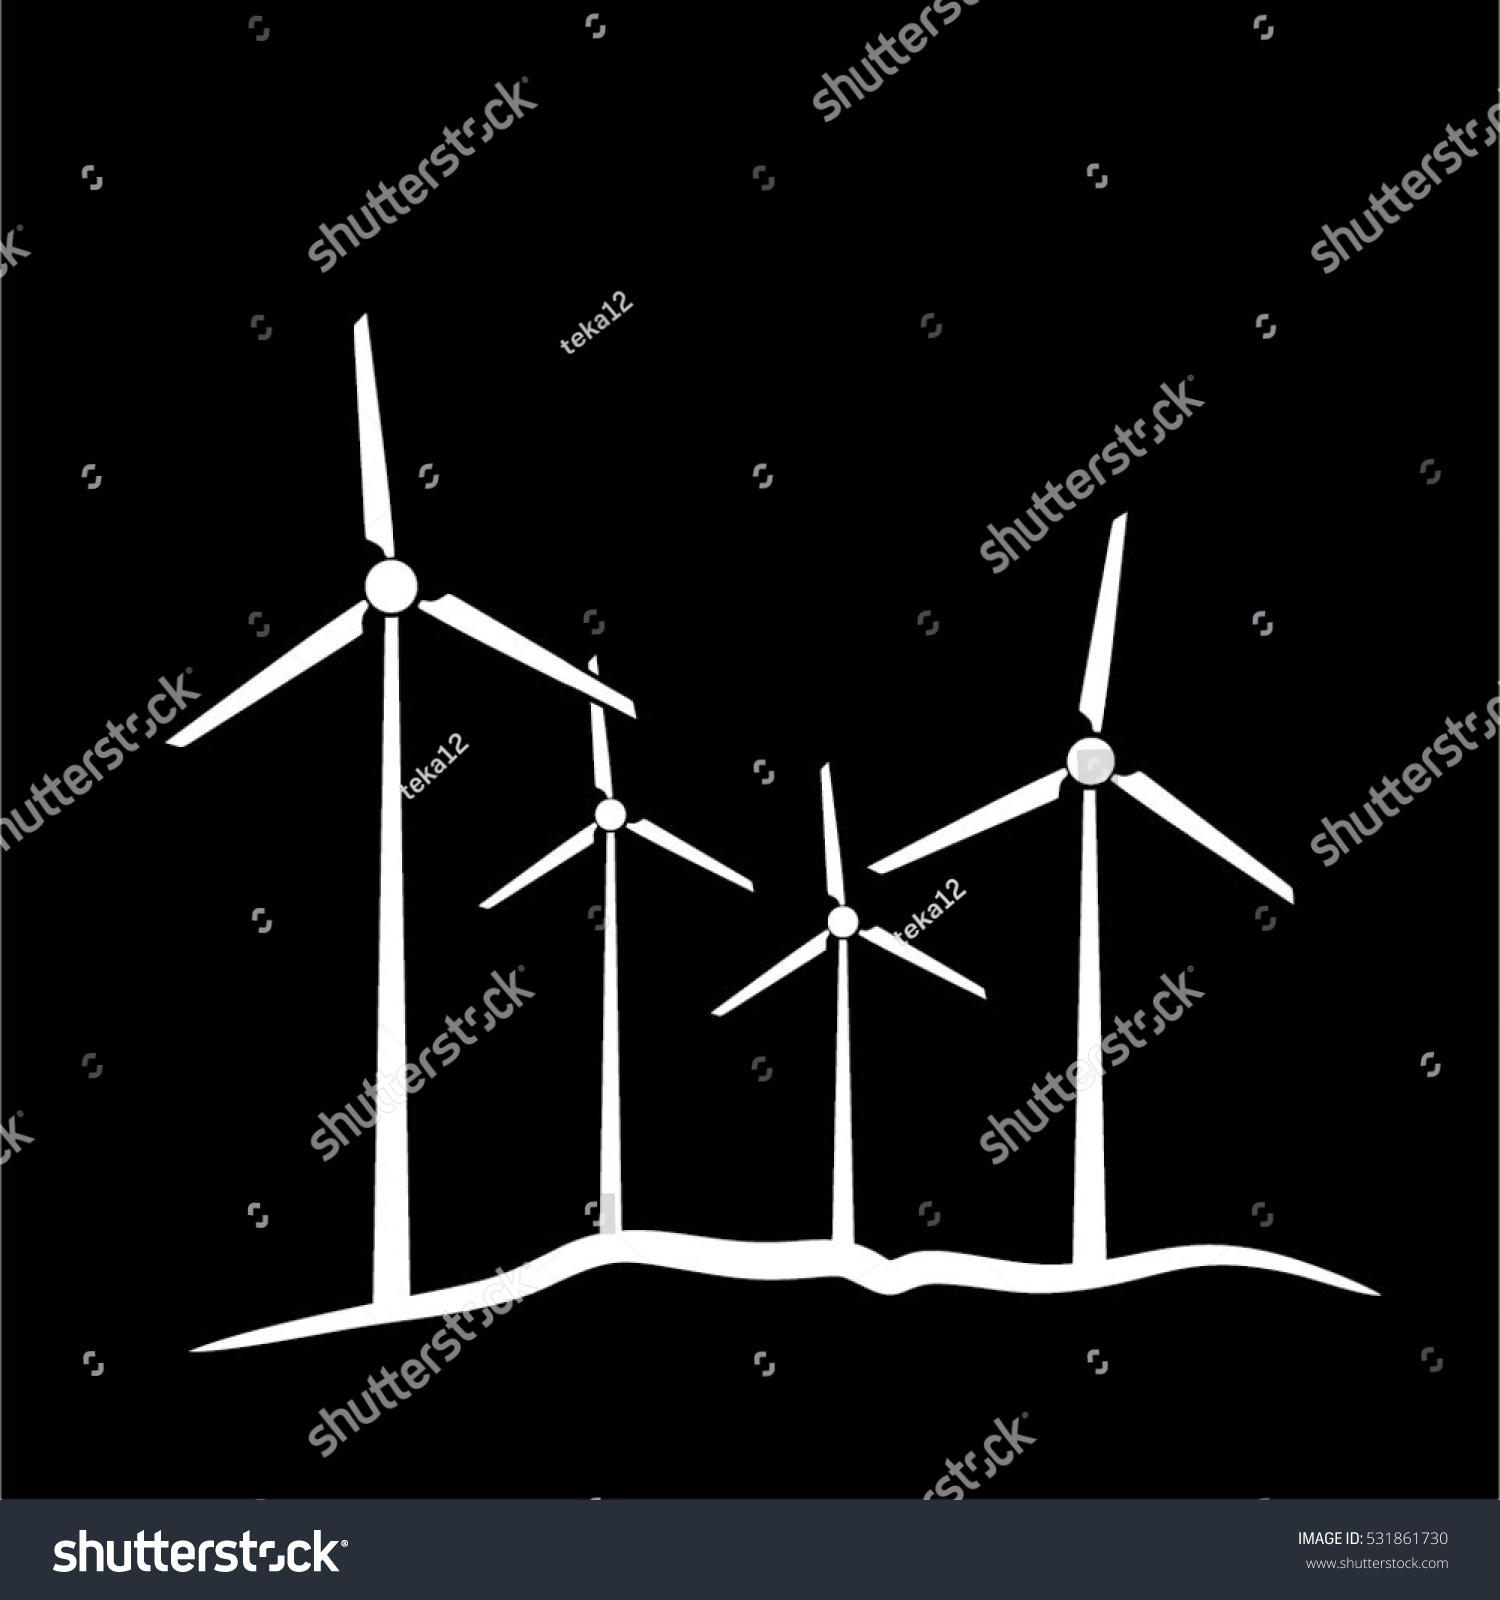 Windmill Vector Stock Vector 531861730 - Shutterstock